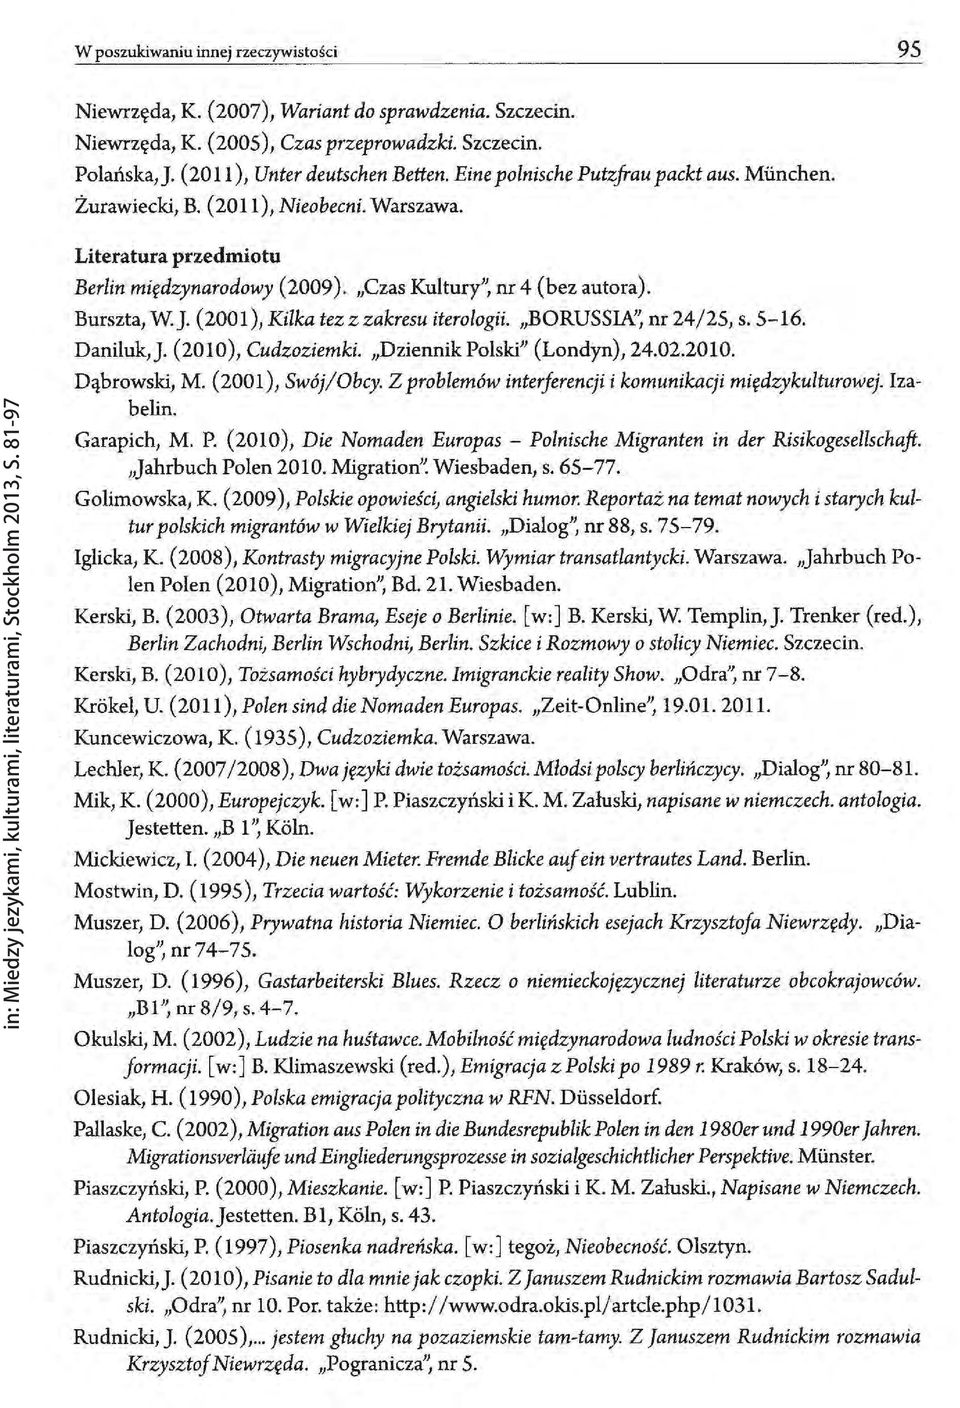 (2001), Kilka tezzzakresu iterologii. "BORUSSIA", nr24/25, s. S-16. Daniluk,J. (2010), Cudzoziemki. "DziennikPolski" (Londyn),24.02.2010. Dąbrowski, M. (2001), Swój/Obcy.